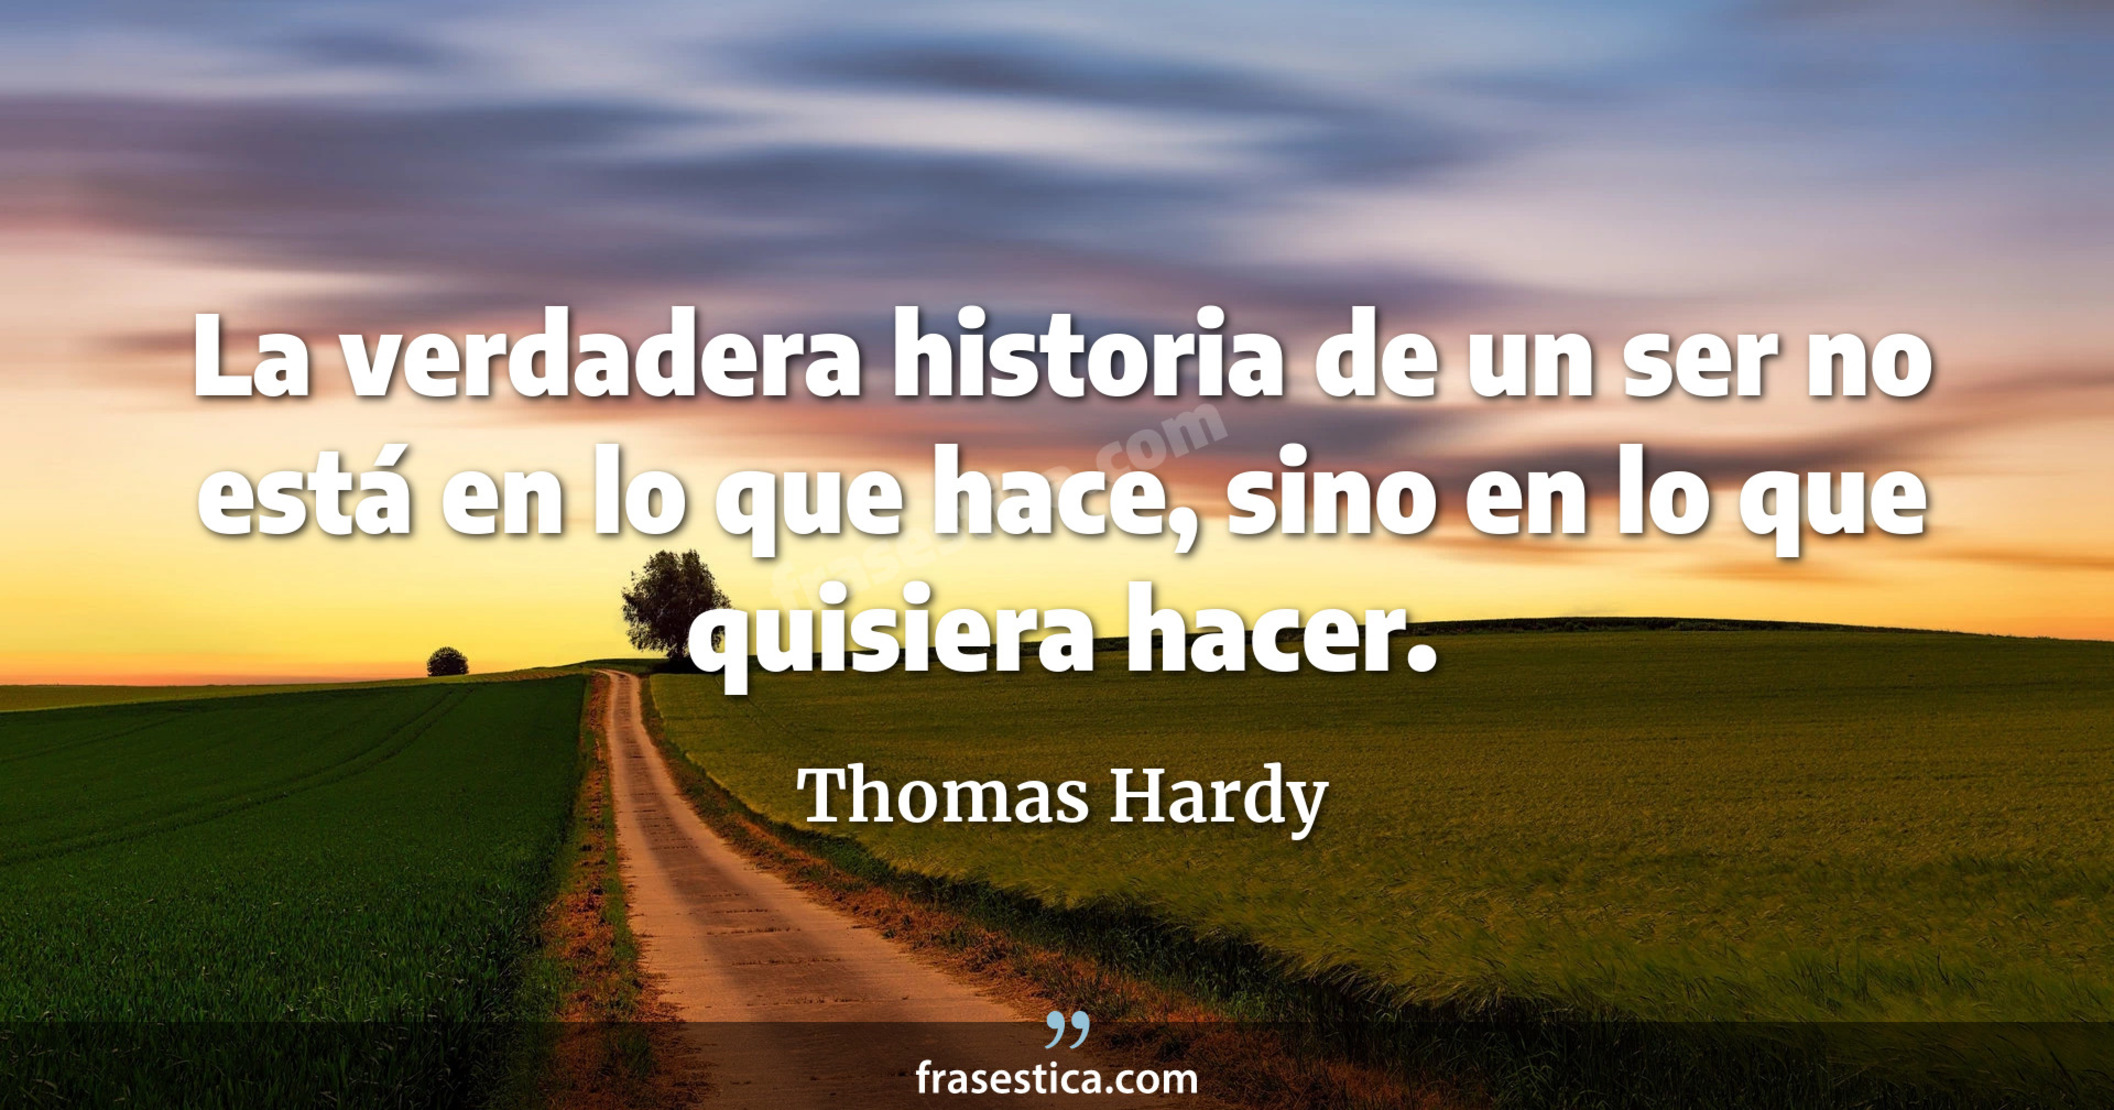 La verdadera historia de un ser no está en lo que hace, sino en lo que quisiera hacer. - Thomas Hardy